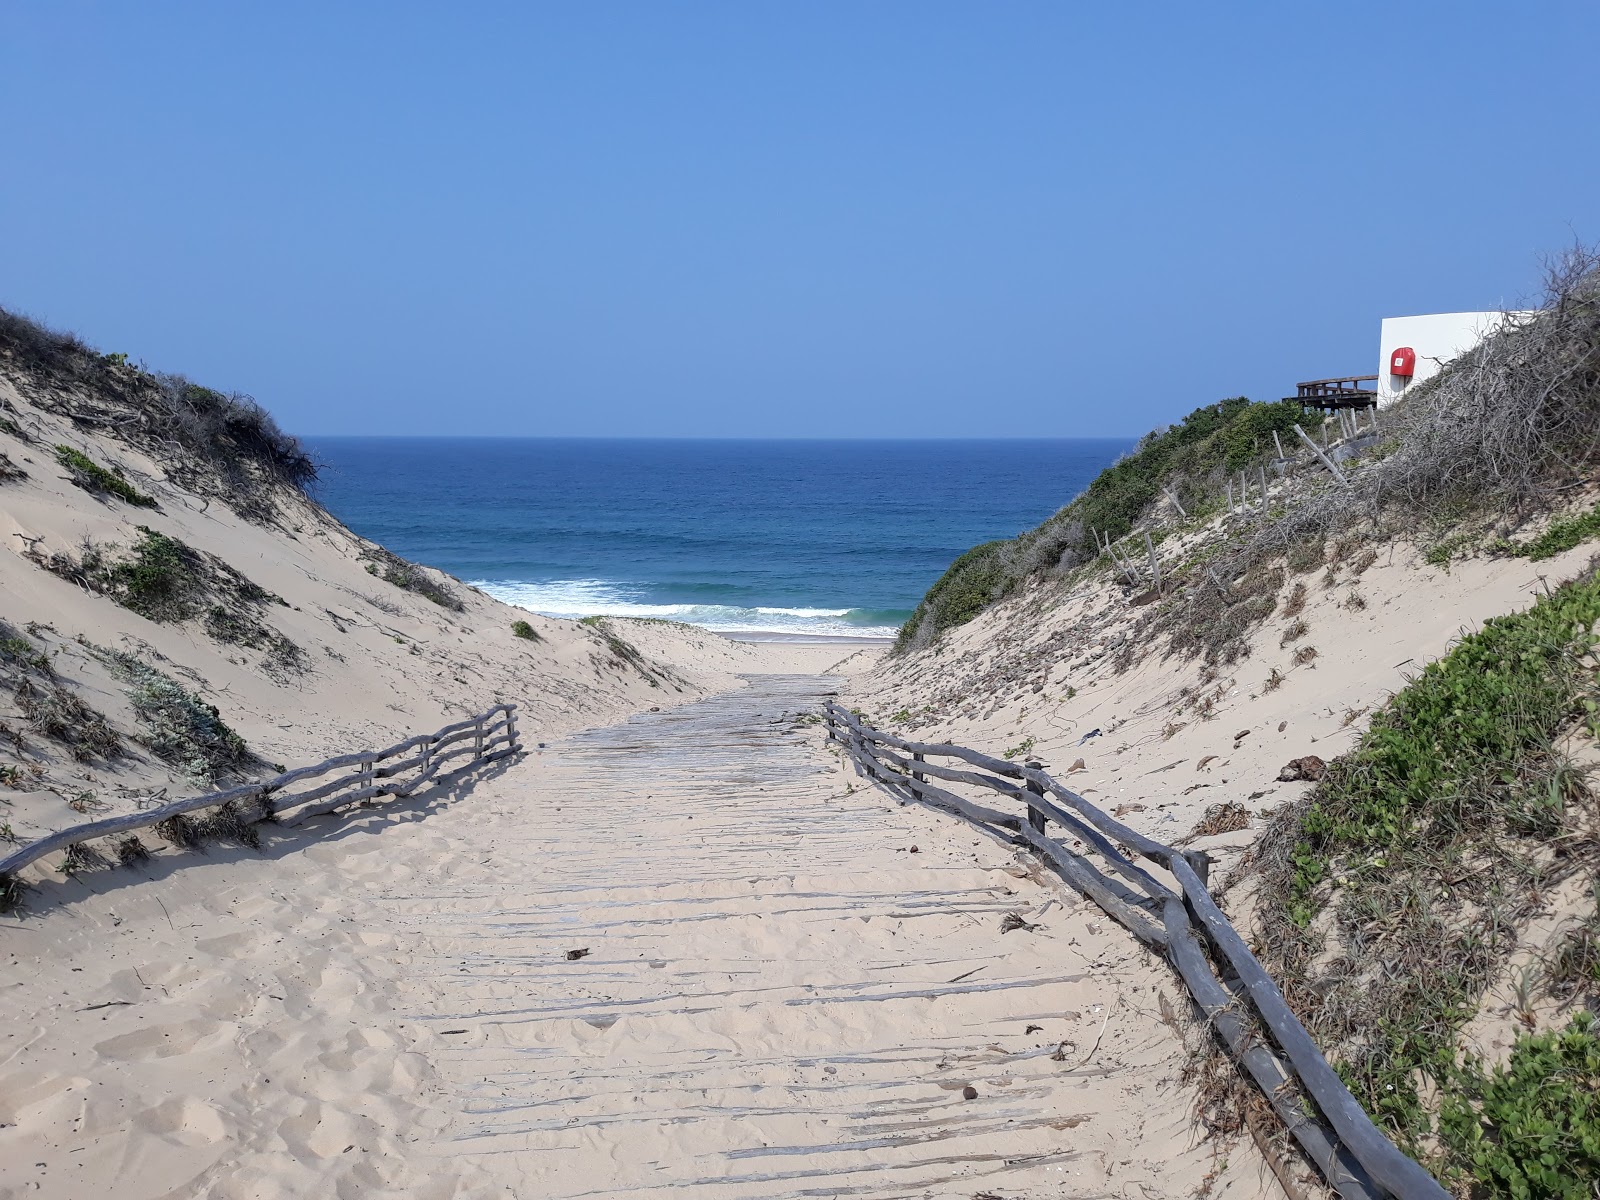 Foto af Praia da Rocha - populært sted blandt afslapningskendere